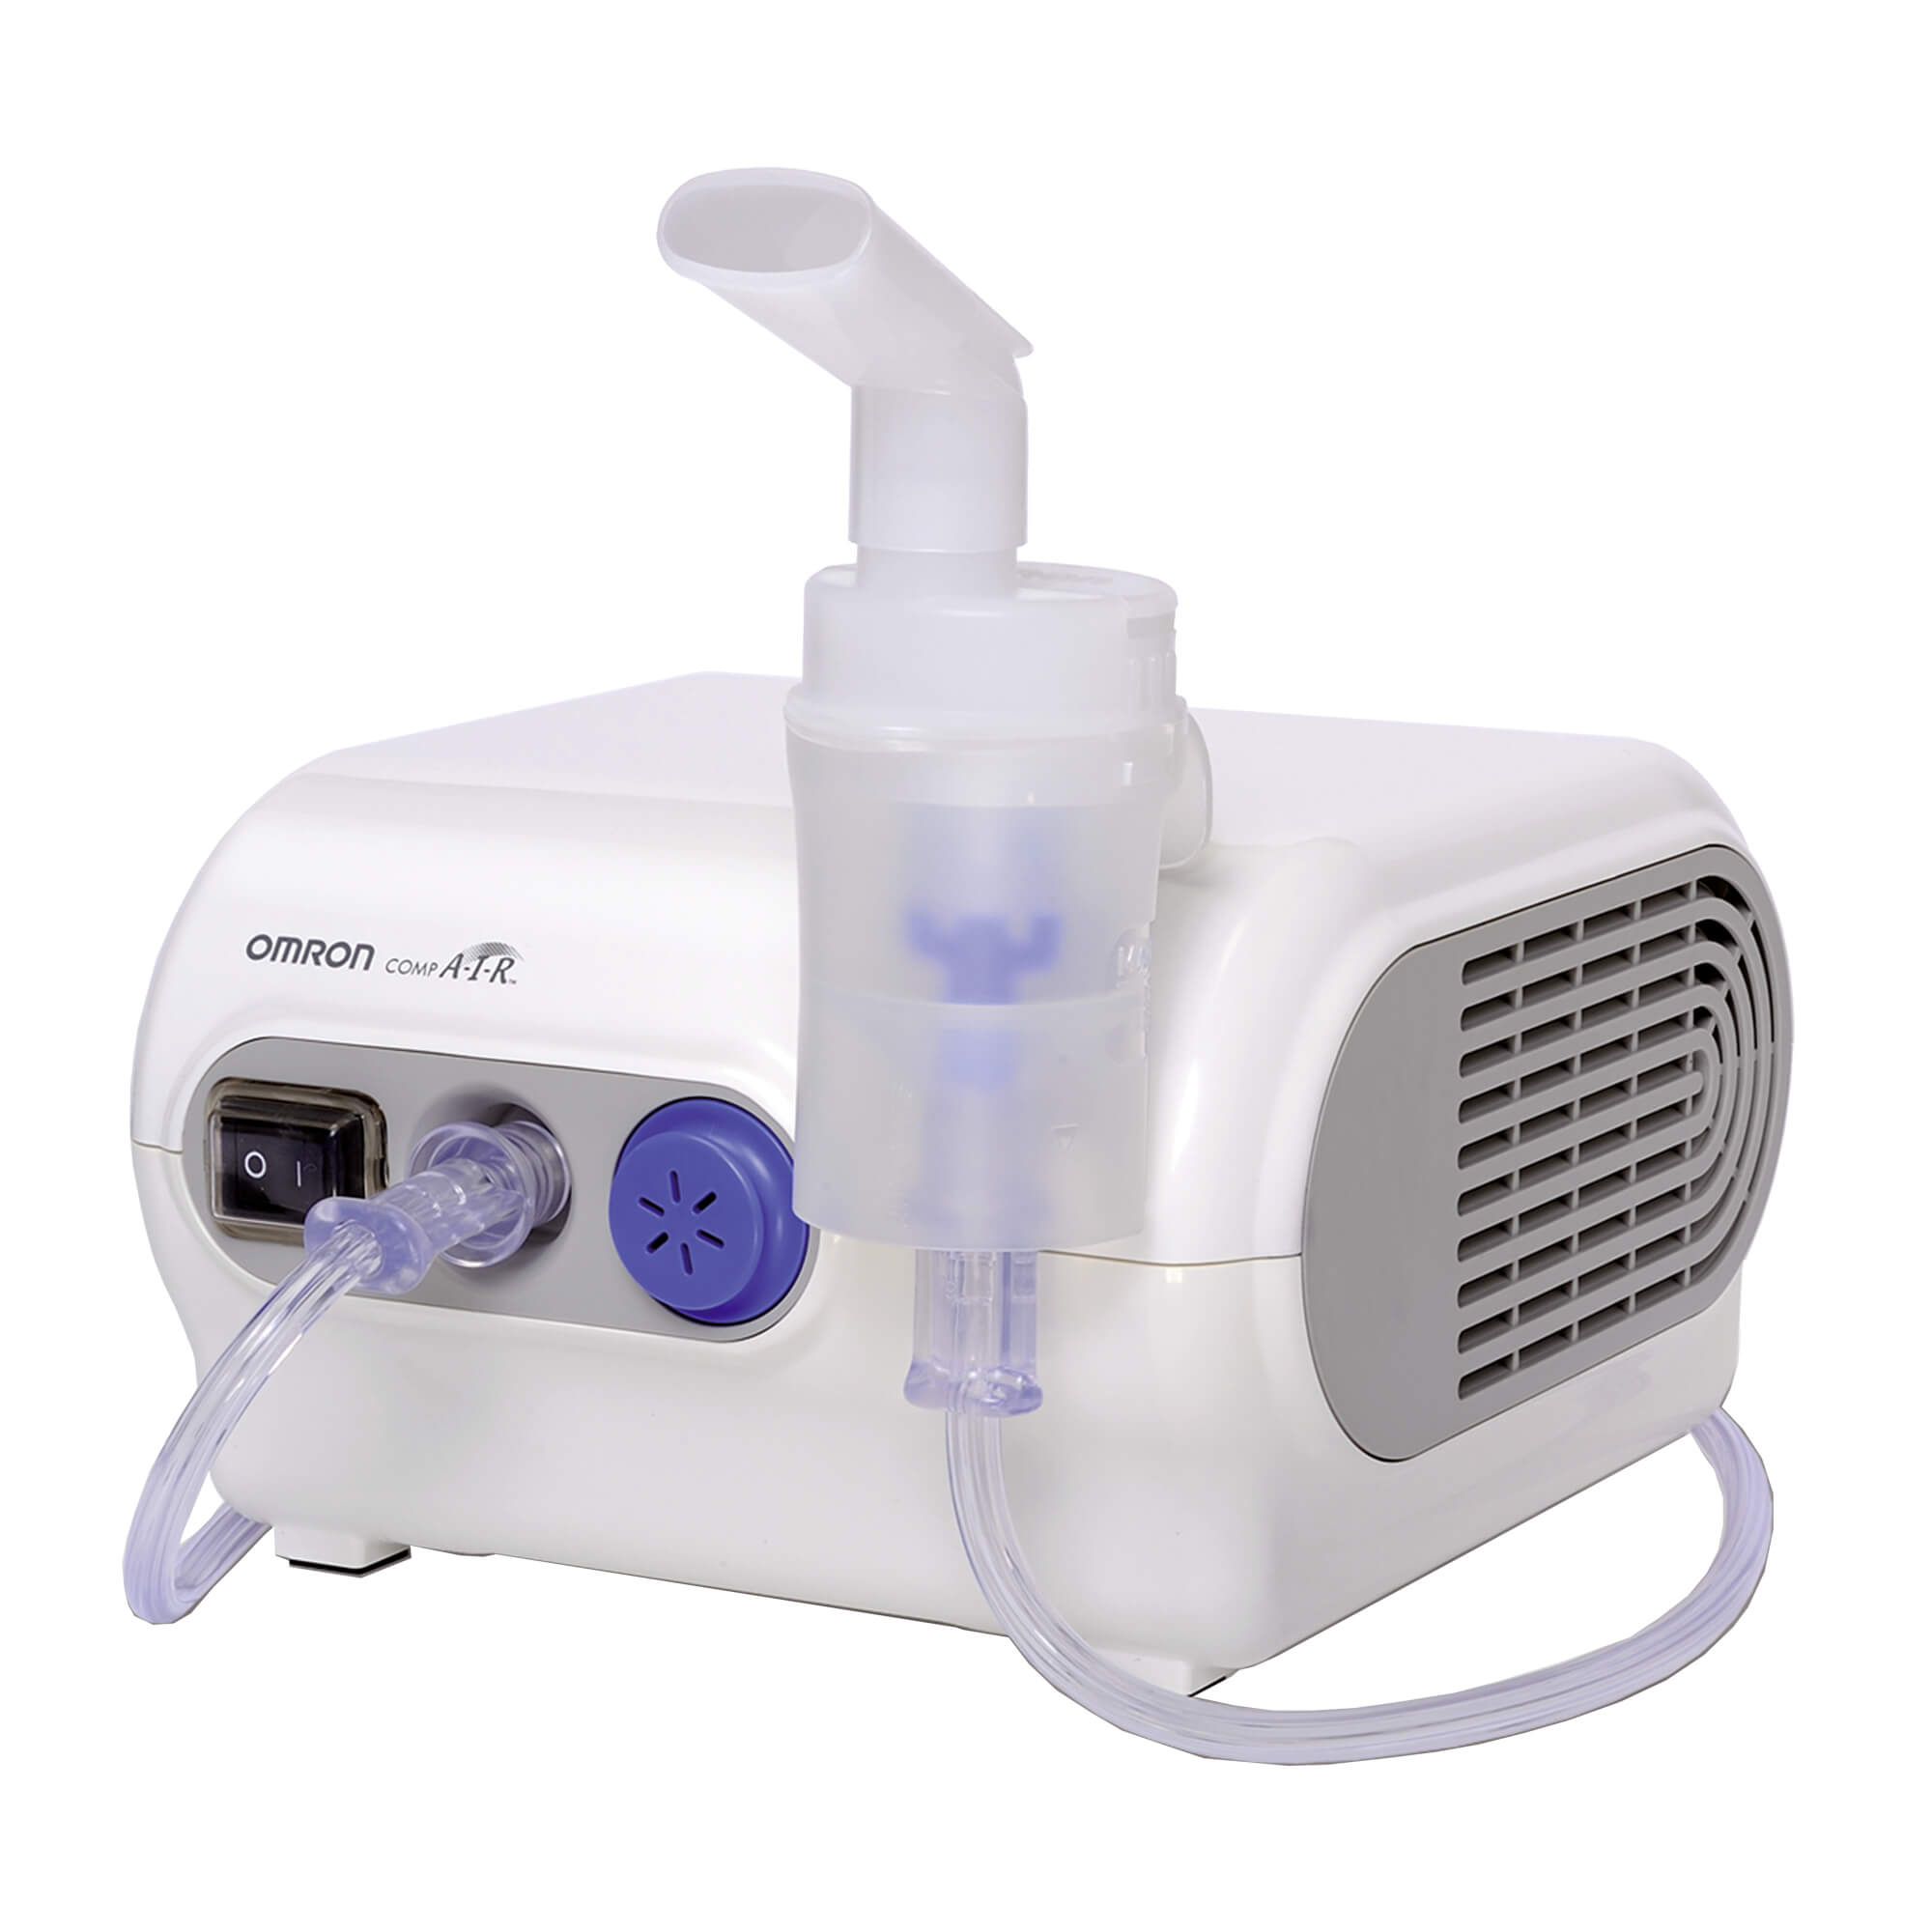 Kompressor-Inhalationsgerät mit Stauraum – das ideale Gerät für den Hausgebrauch.